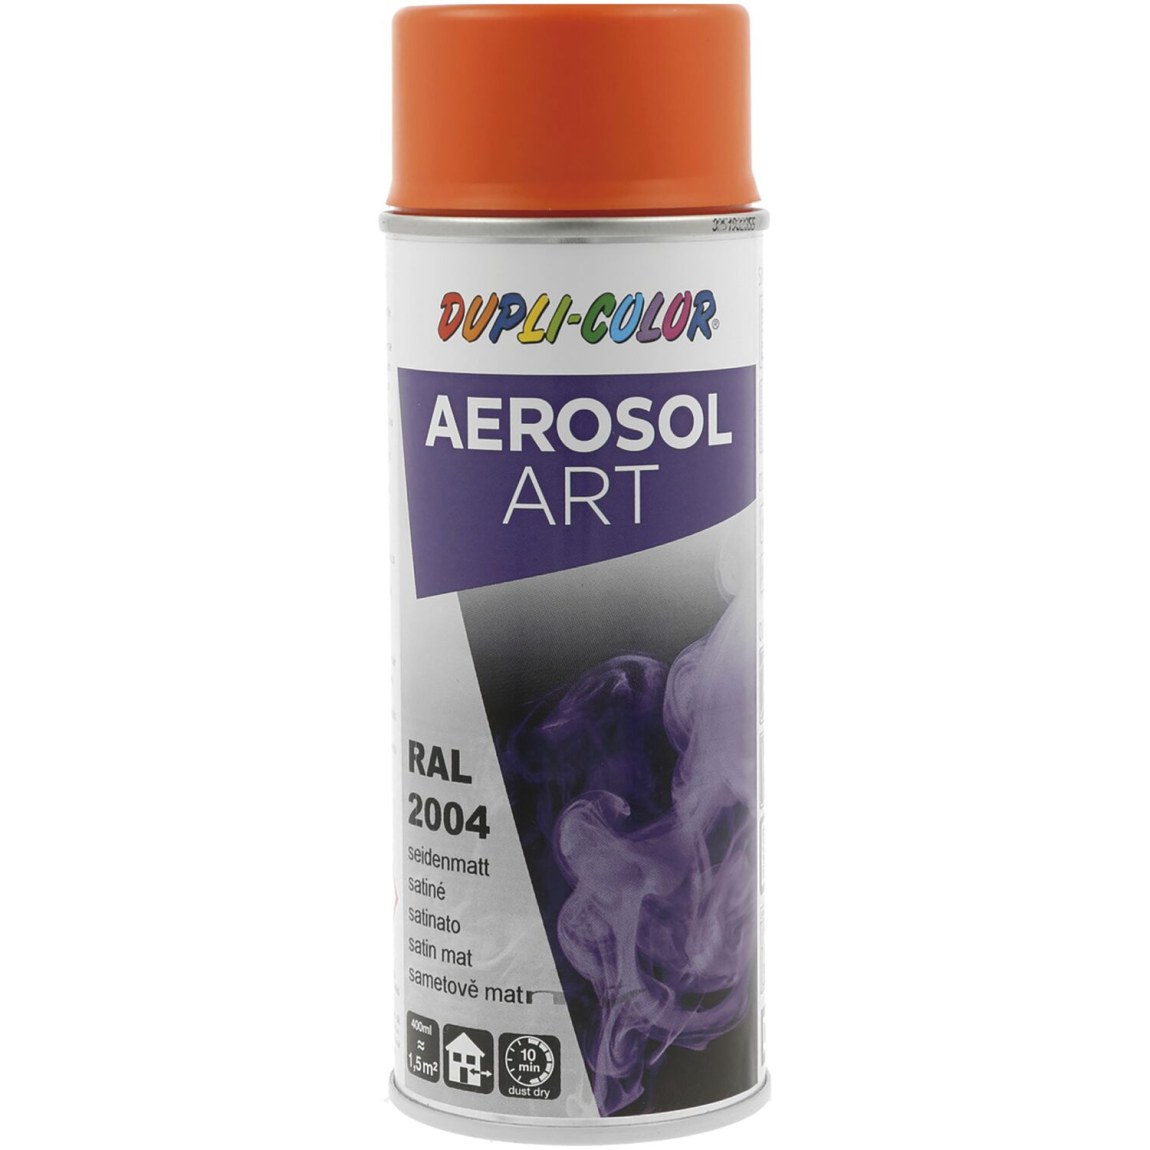 Dupli-Color Aerosol Art sprej 400 ml oranžová hedv.mat / RAL 2004 - Železářství Chemicko-technické výrobky Technické aerosoly Lak ve Spreji